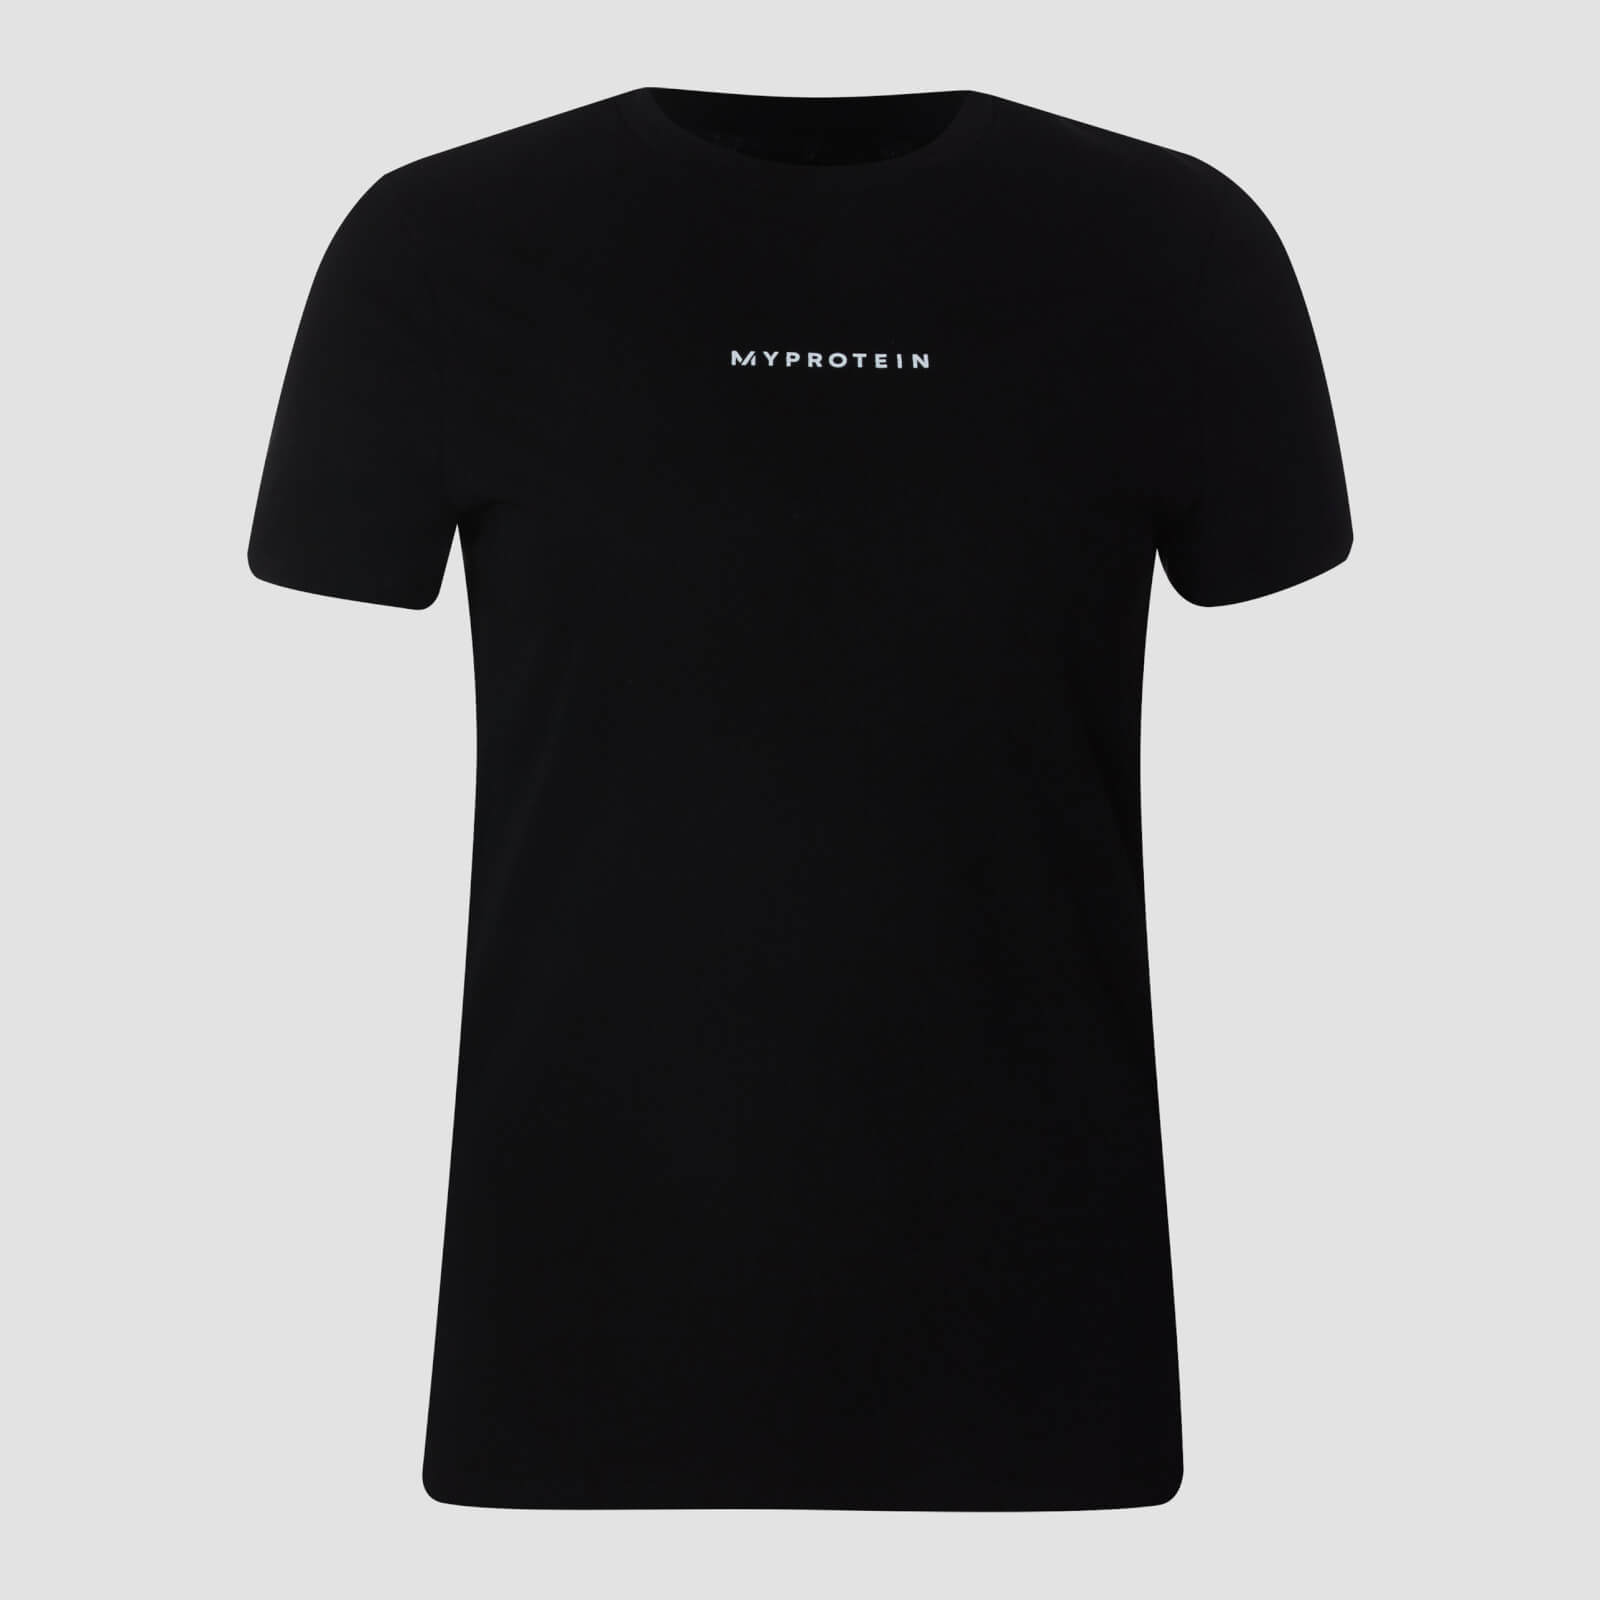 Myprotein MP Women's Originals T-Shirt - Black - XS